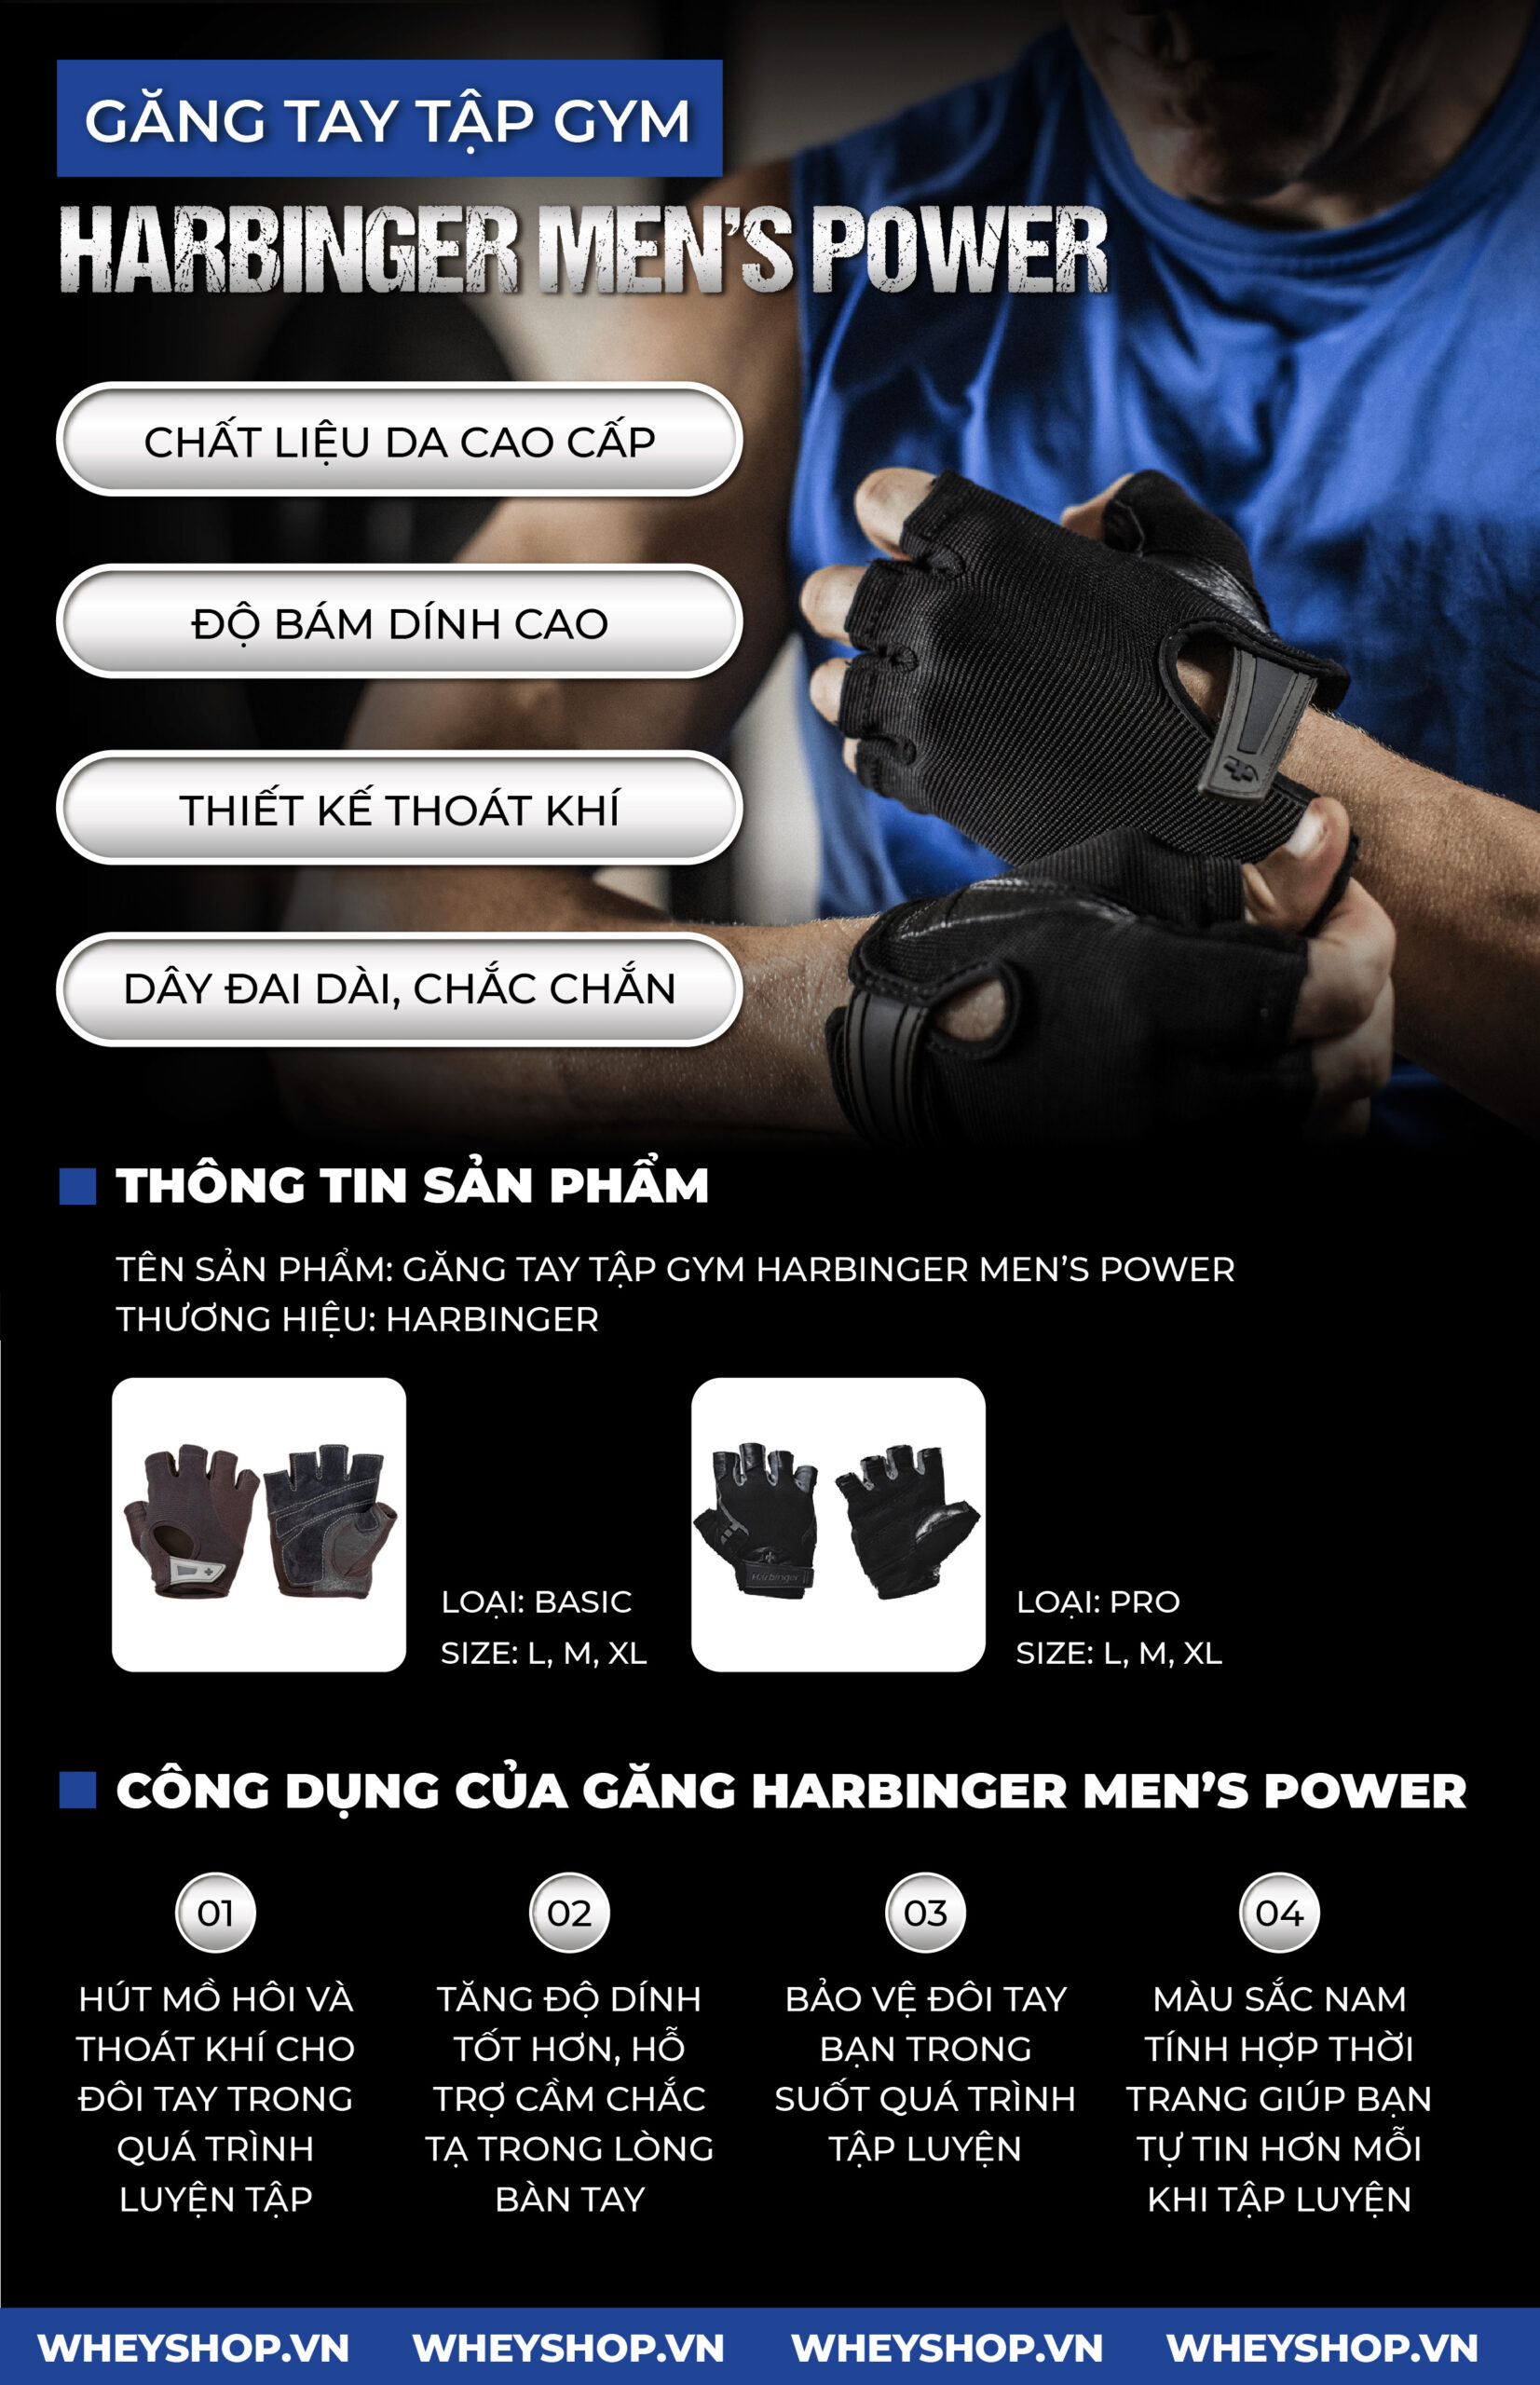 Găng Tay Tập Gym Cho Nam Harbinger Men's Power hỗ trợ cải thiện tập luyện, bảo vệ bàn tay. Sản phẩm nhập khẩu chính hãng, cam kết giá rẻ tốt nhất Hà Nội TpHCM...